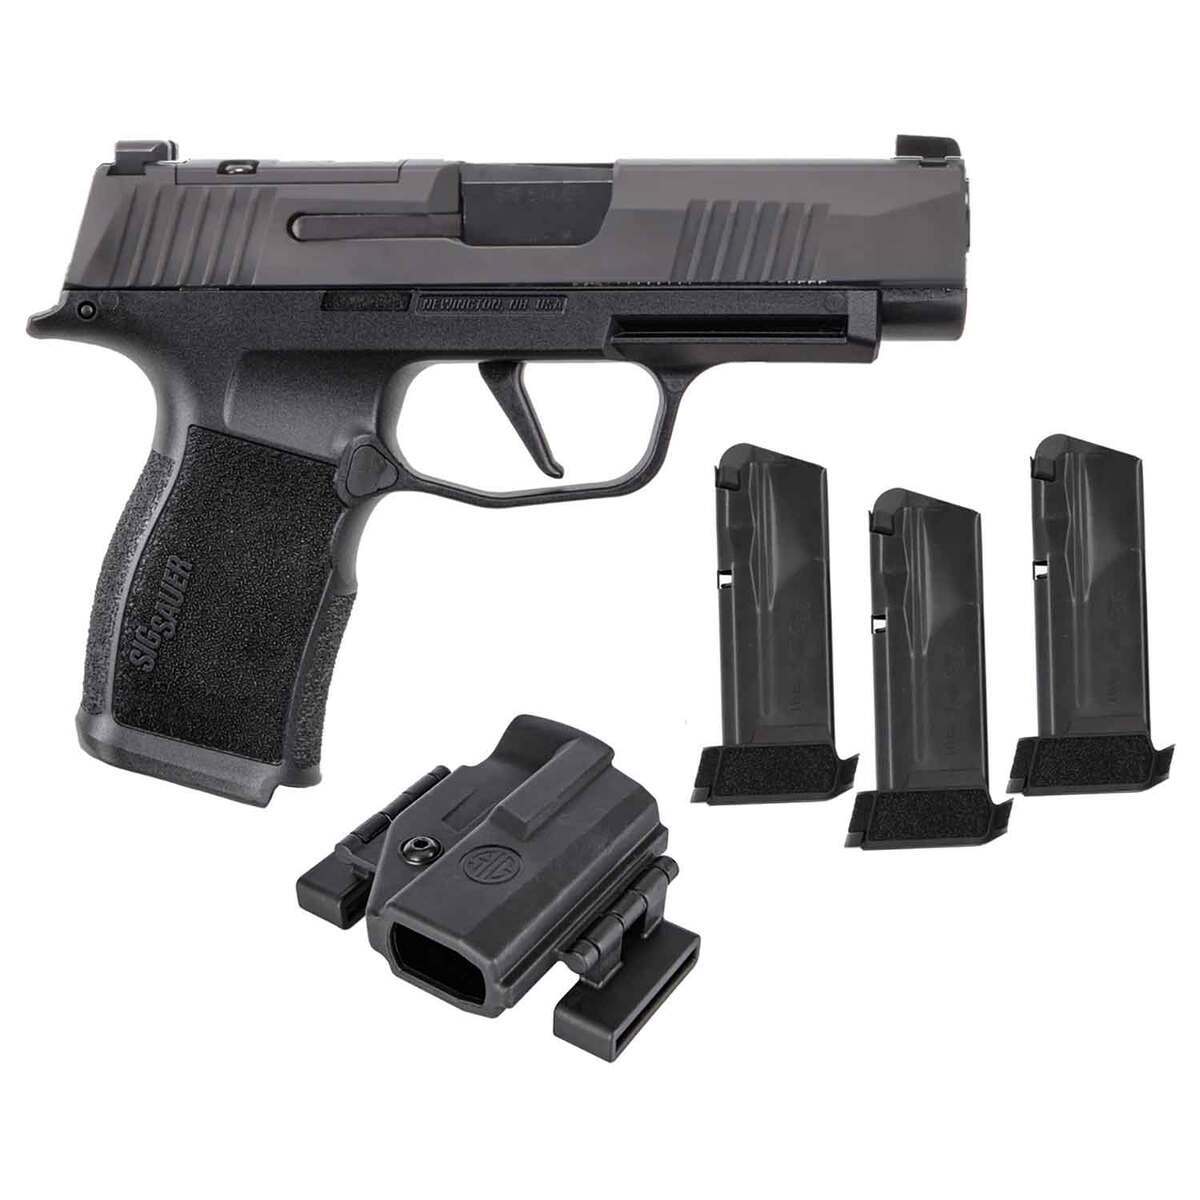 SIG Sauer P365 XL 9mm Pistol Review - Guns and Ammo